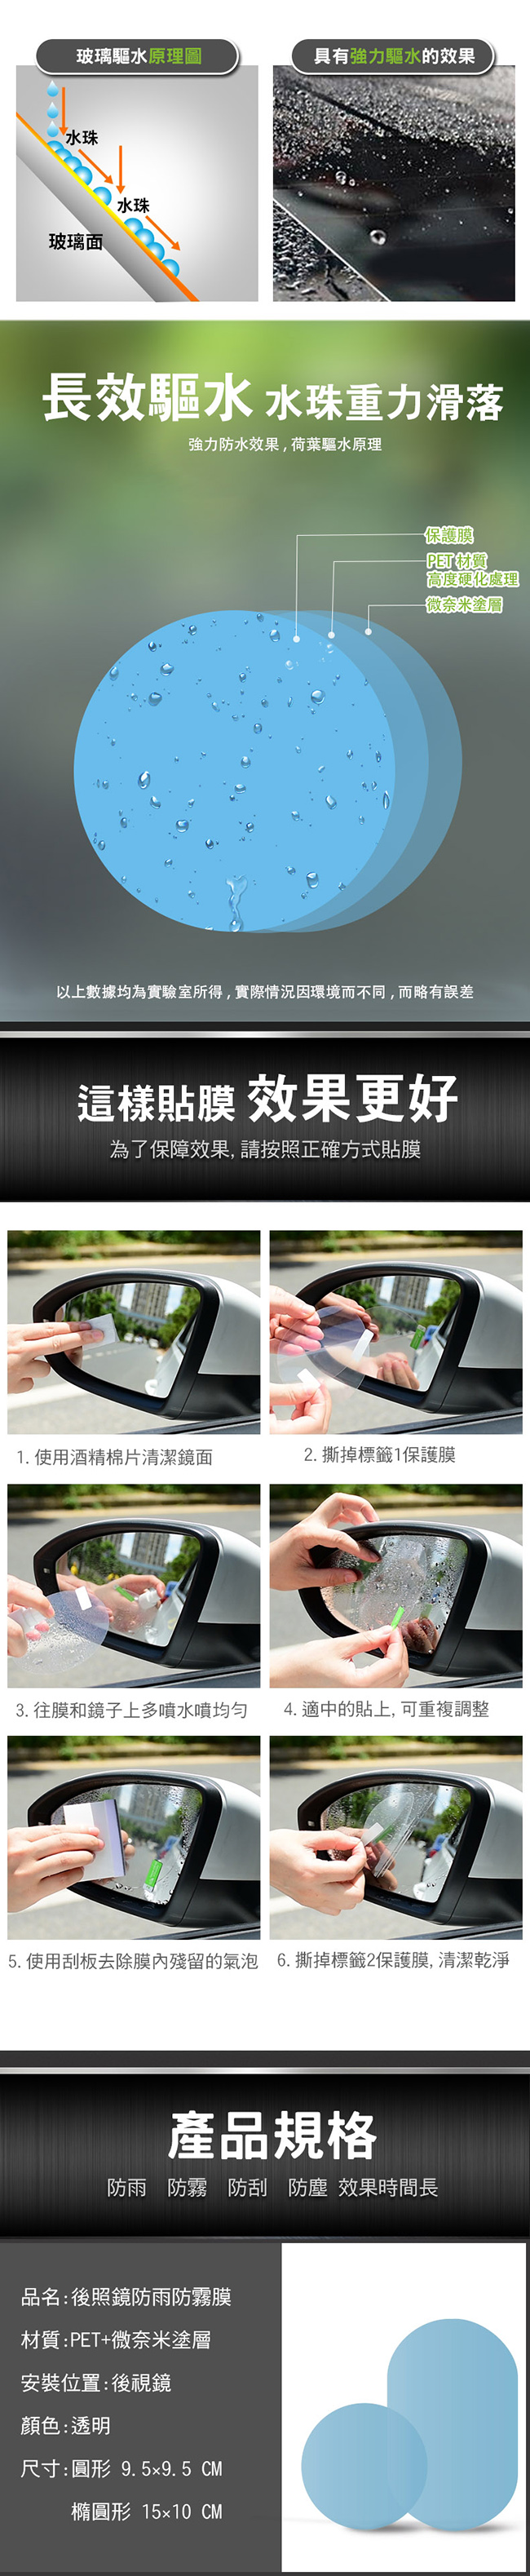 汽車/機車後視鏡防雨防霧膜 防水貼片(4入組)